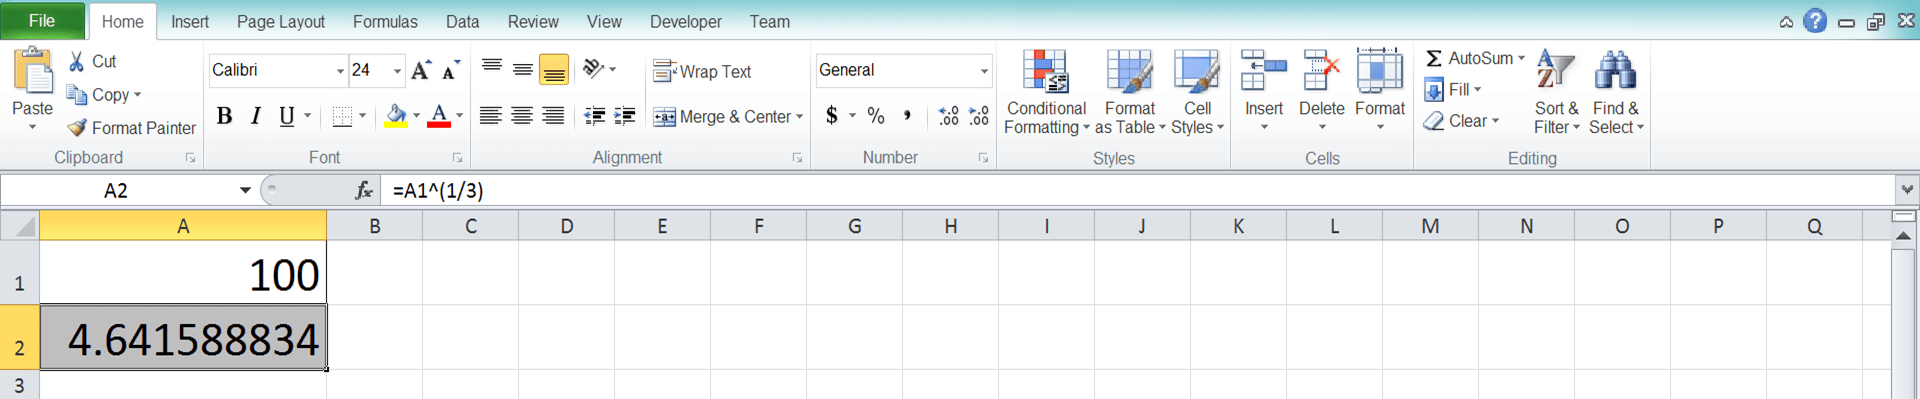 Cara Menghitung Akar di Excel Beserta Berbagai Rumus dan Fungsinya - Screenshot Langkah 1-7